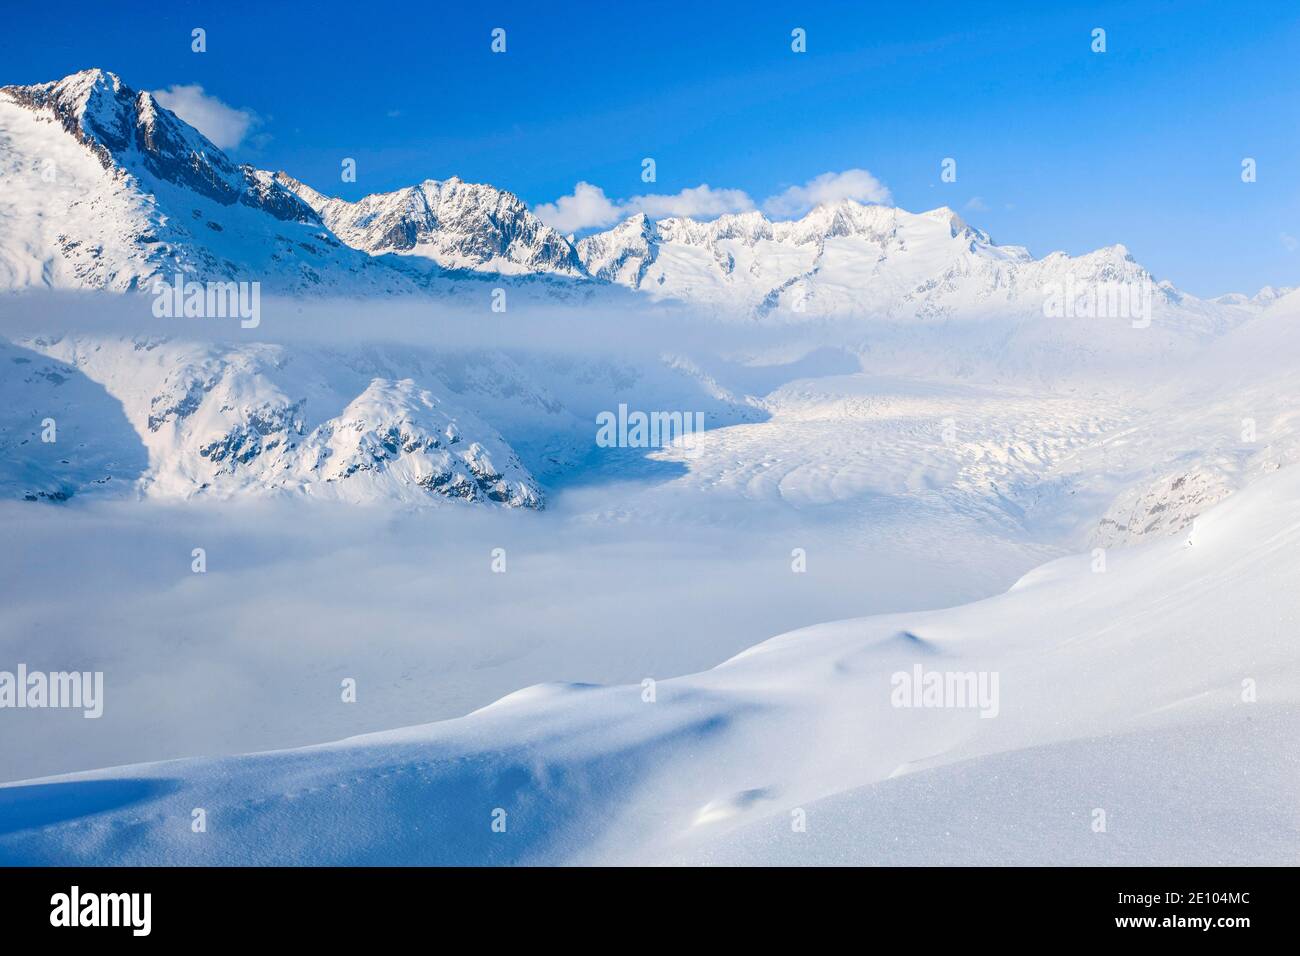 Wannenhörner and Aletsch glacier in winter, Valais, Switzerland, Europe Stock Photo